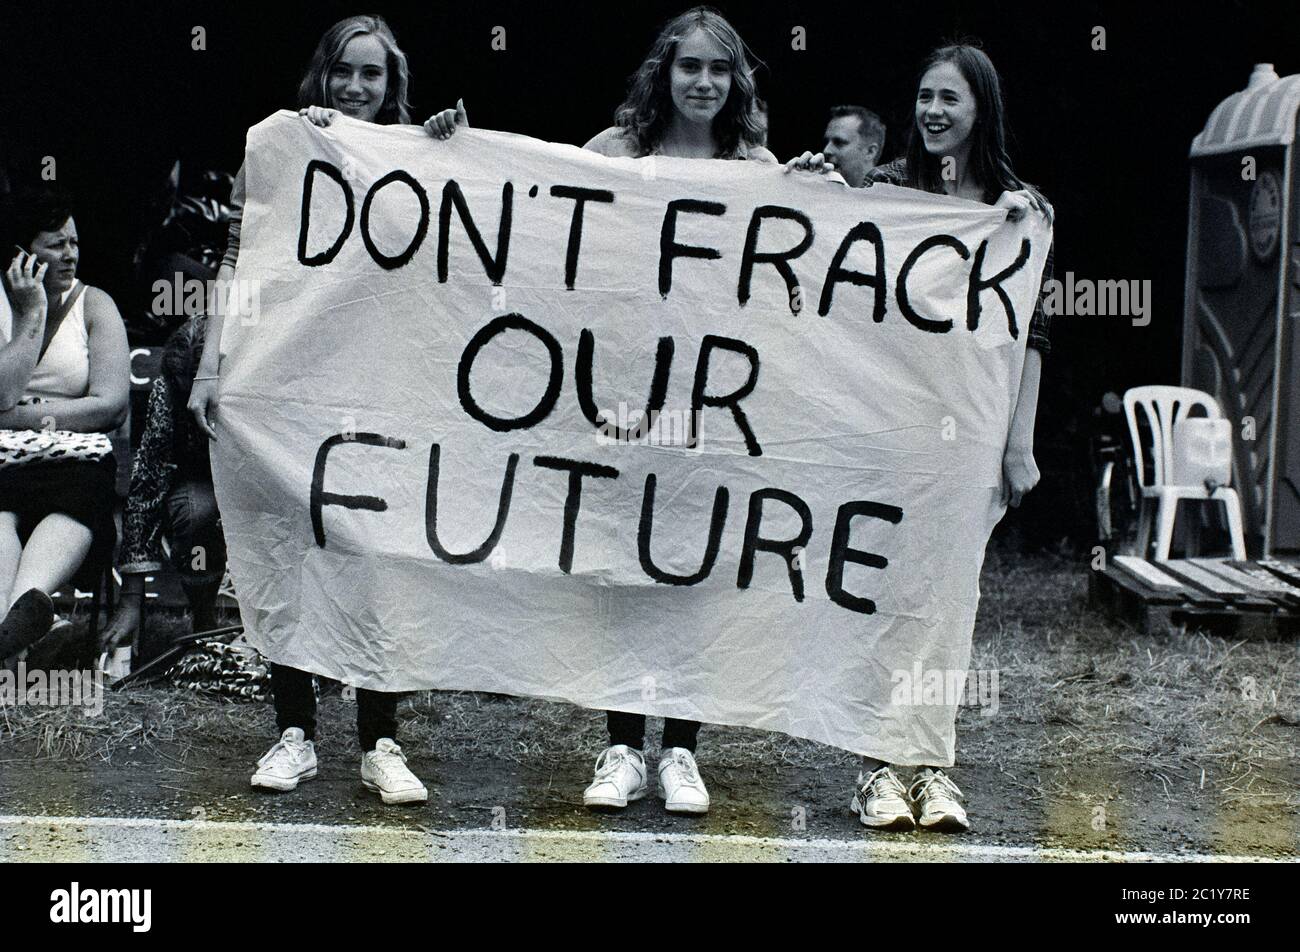 Anti-fracking protest, Balcombe, West Sussex, UK. 2013 Stock Photo